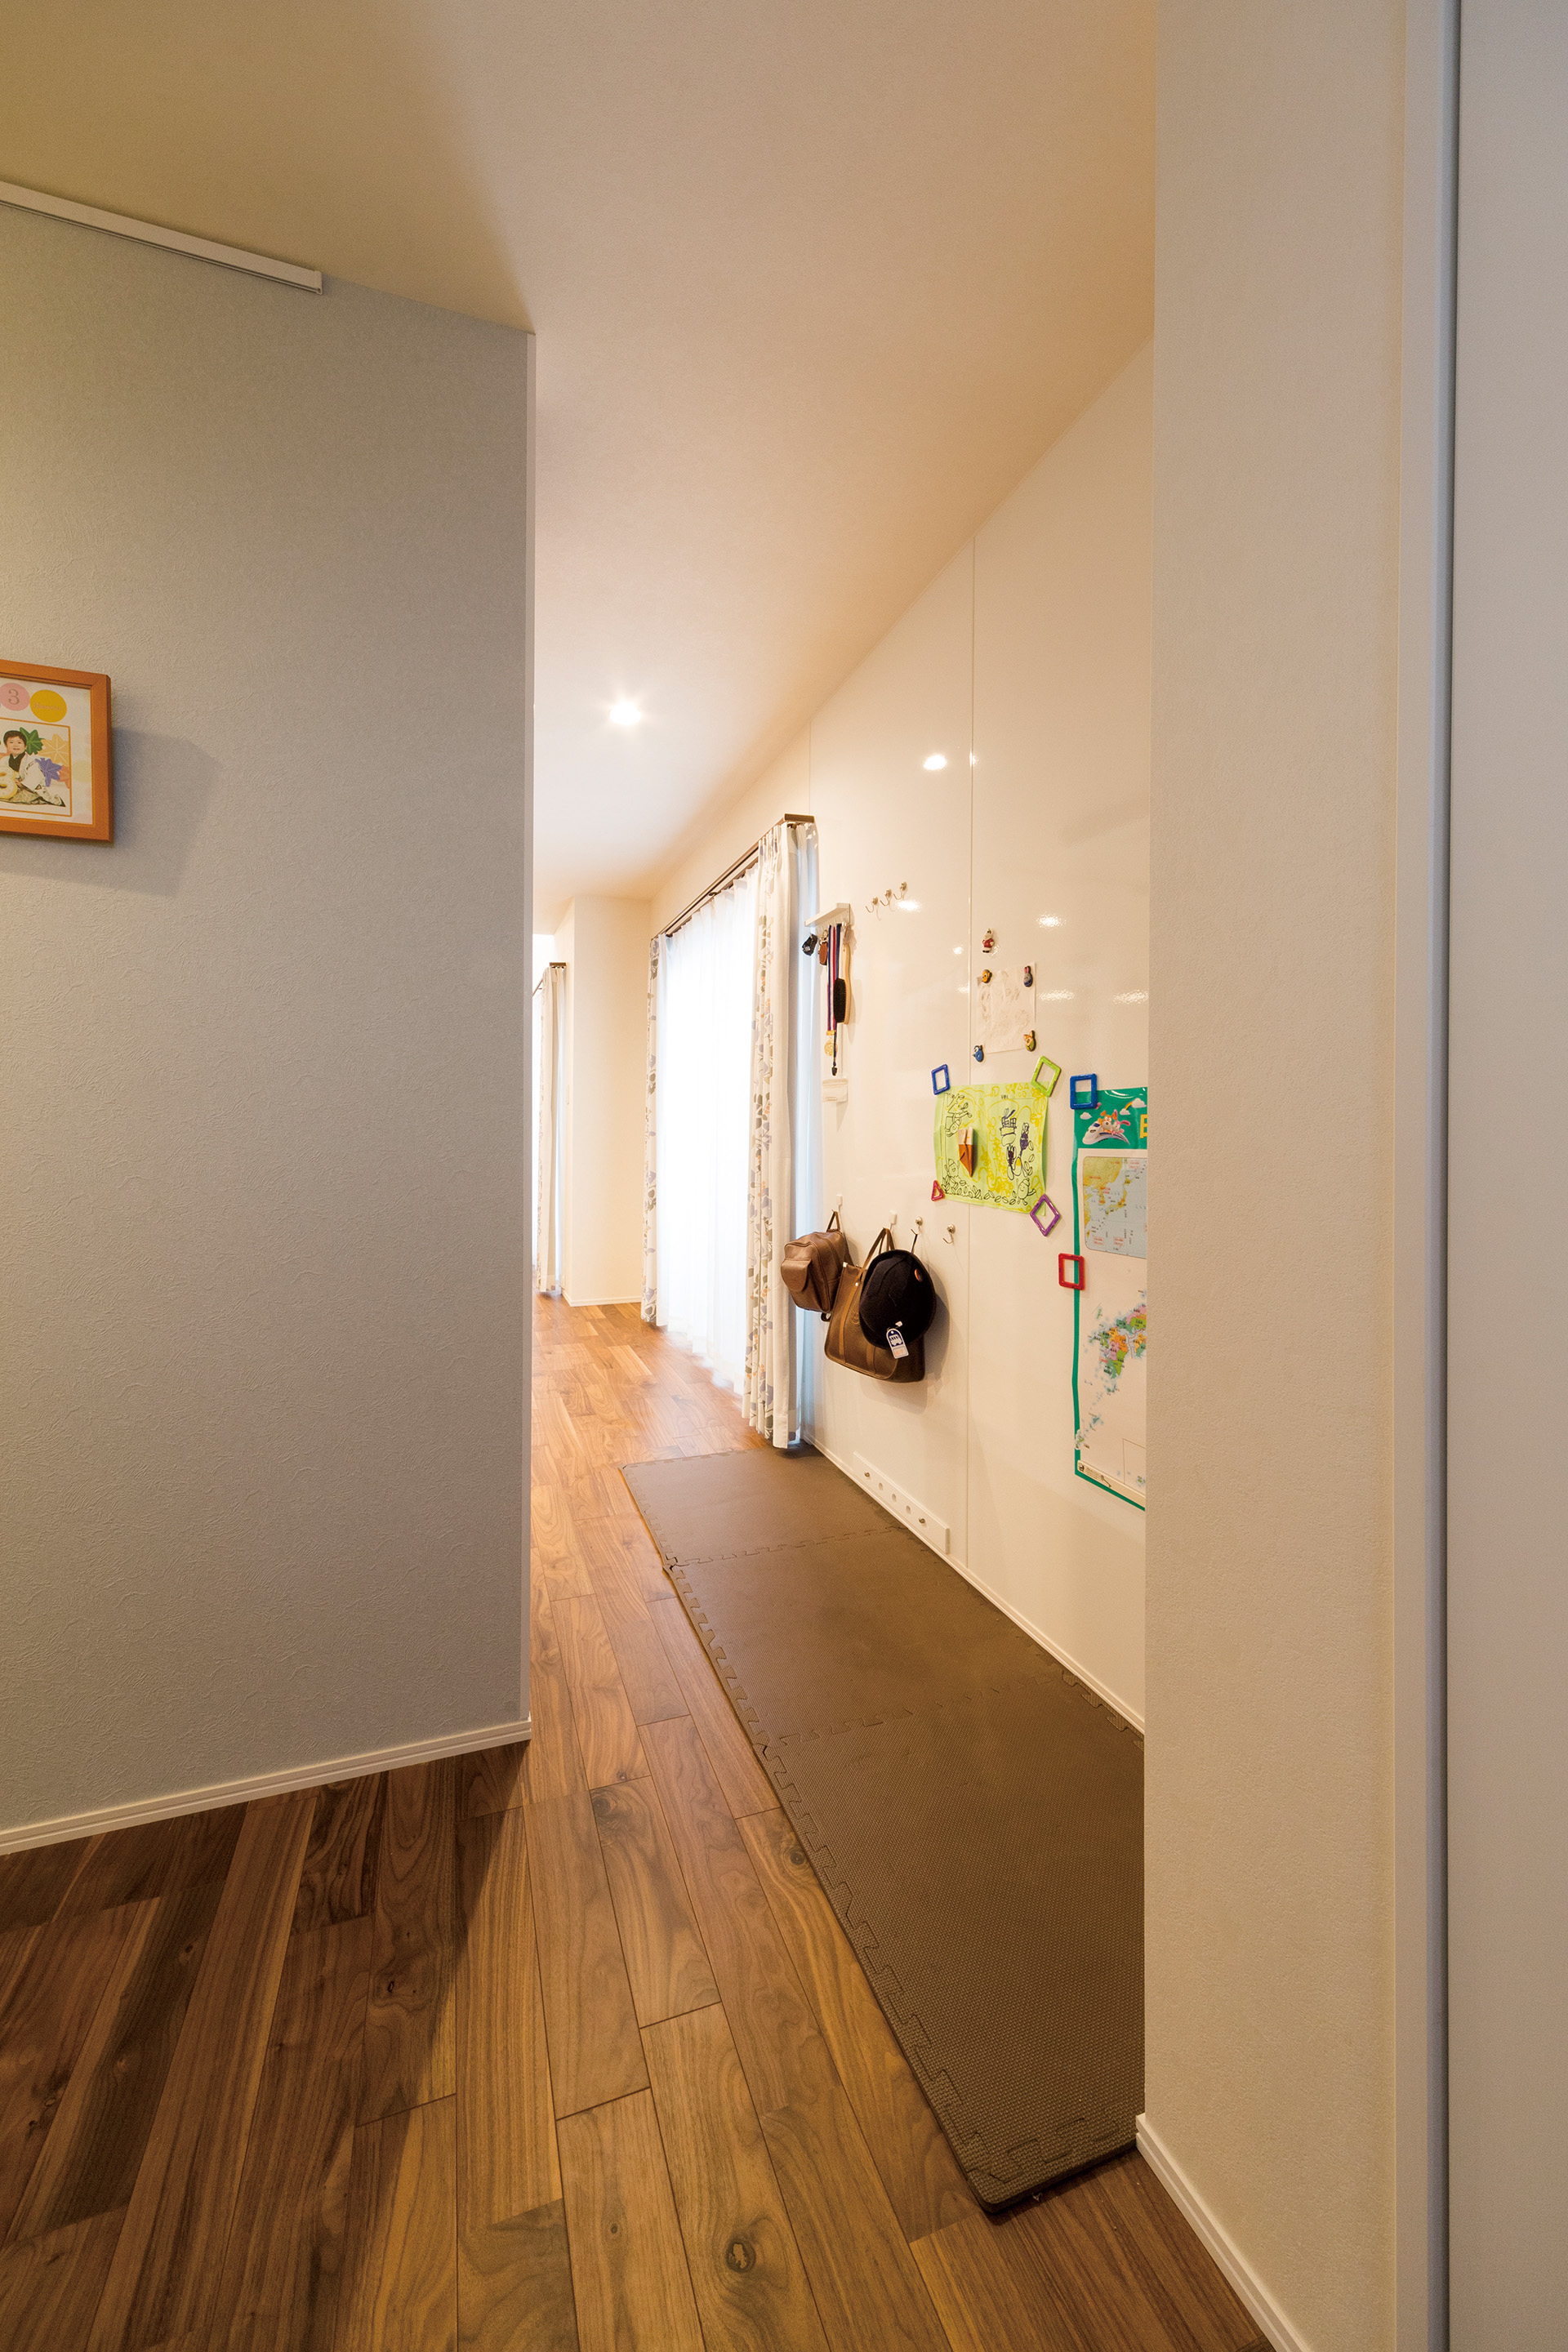 ホーローパネルを貼った廊下は、お子様の遊び場や伝言ボードとしても使えます